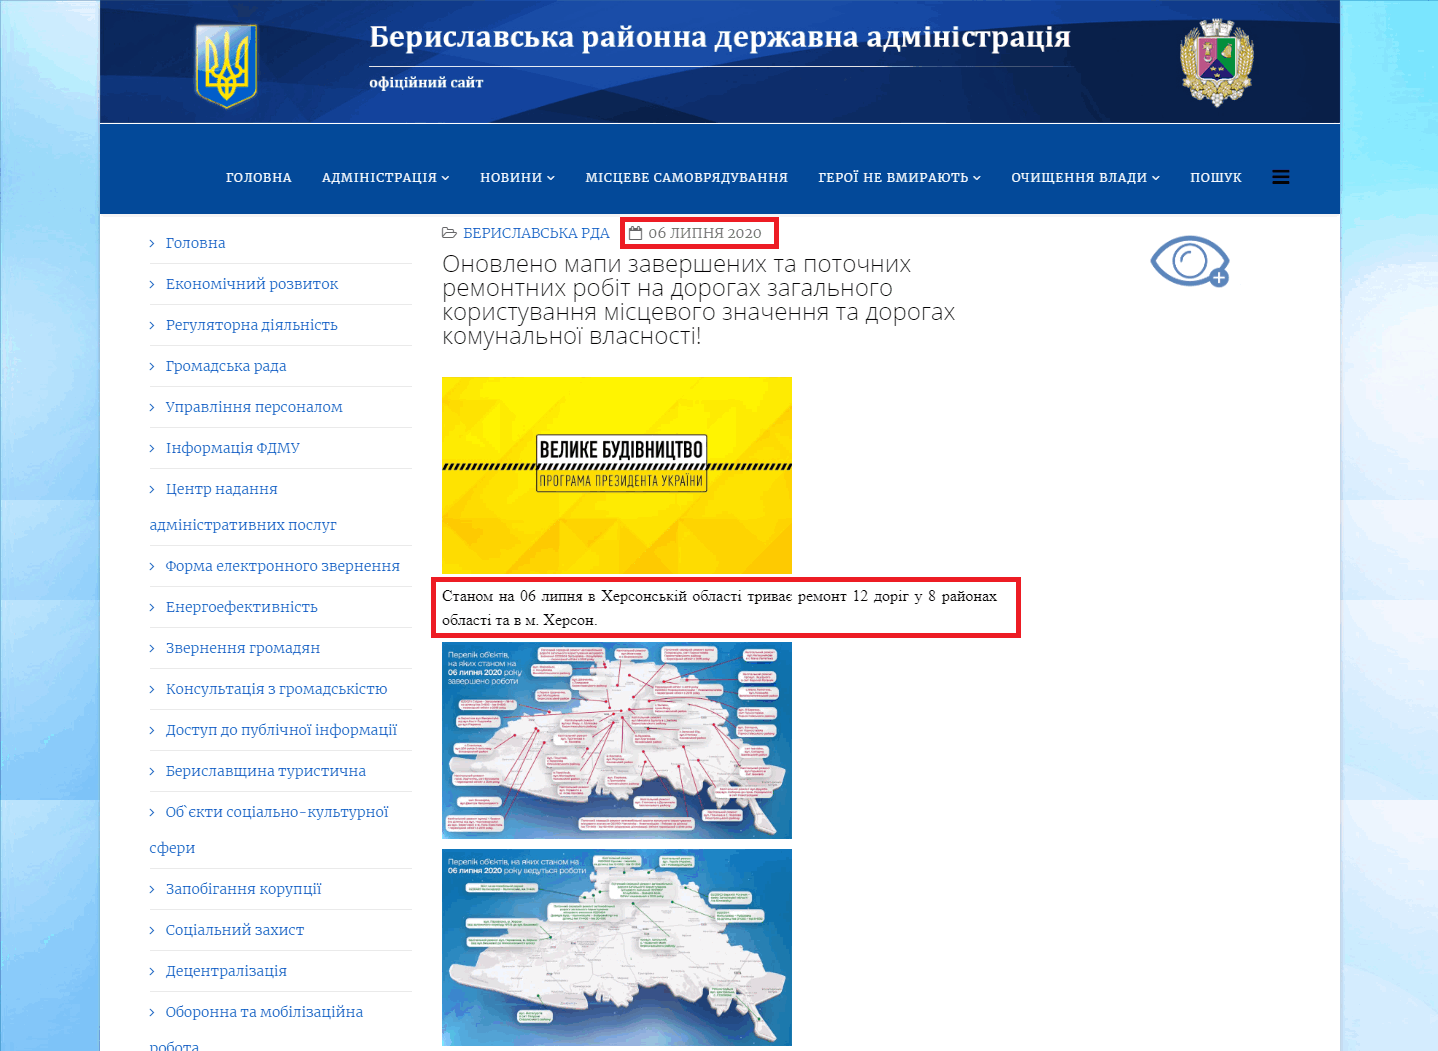 http://rdaberyslav.gov.ua/index.php/home/2-uncategorised/3504-onovleno-mapy-zavershenykh-ta-potochnykh-remontnykh-robit-na-dorohakh-zahalnoho-korystuvannia-mistsevoho-znachennia-ta-dorohakh-komunalnoi-vlasnosti-2